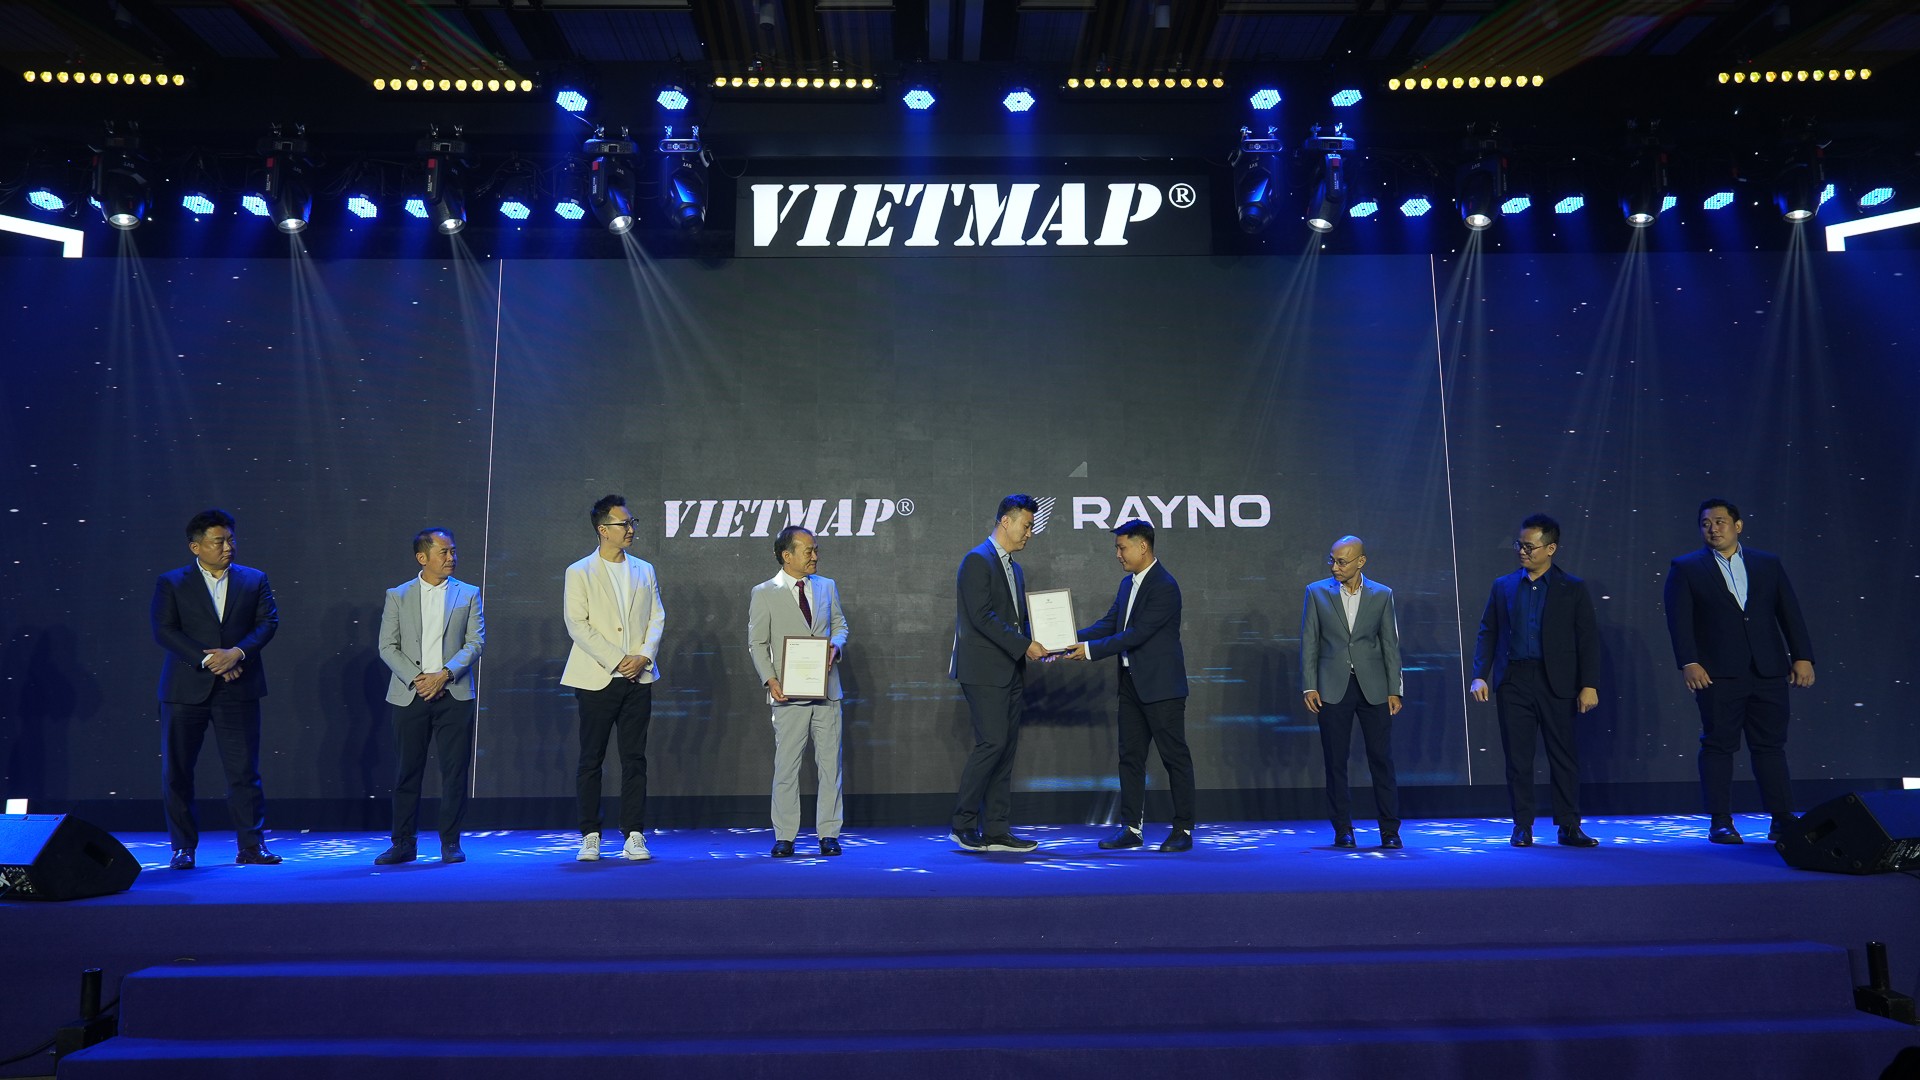 Vietmap trở thành nhà phân phối độc quyên phim cách nhiệt Rayno tại Việt Nam